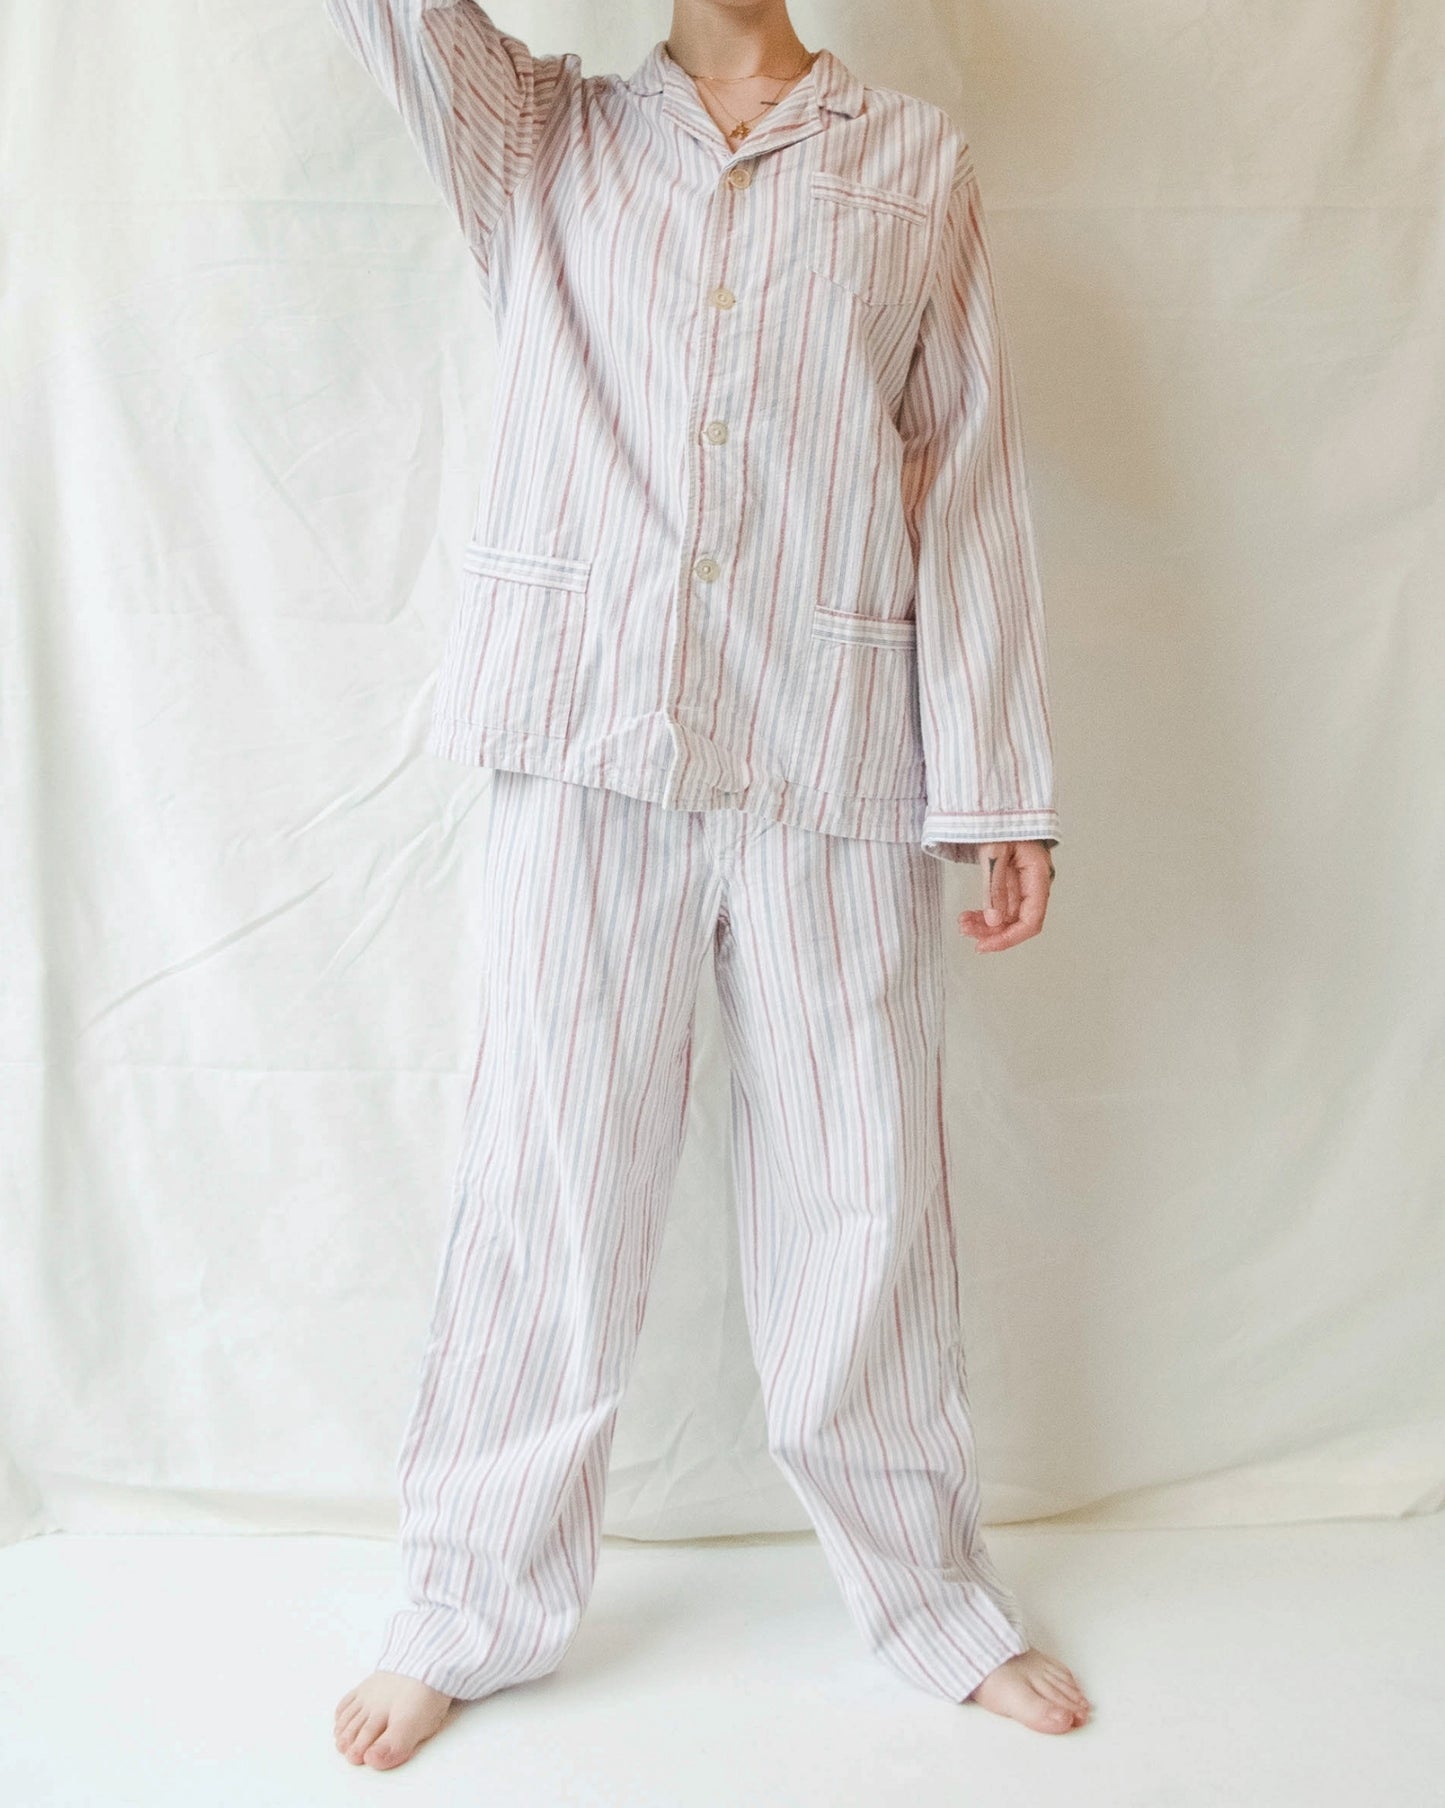 NOS Cotton Pajama Set